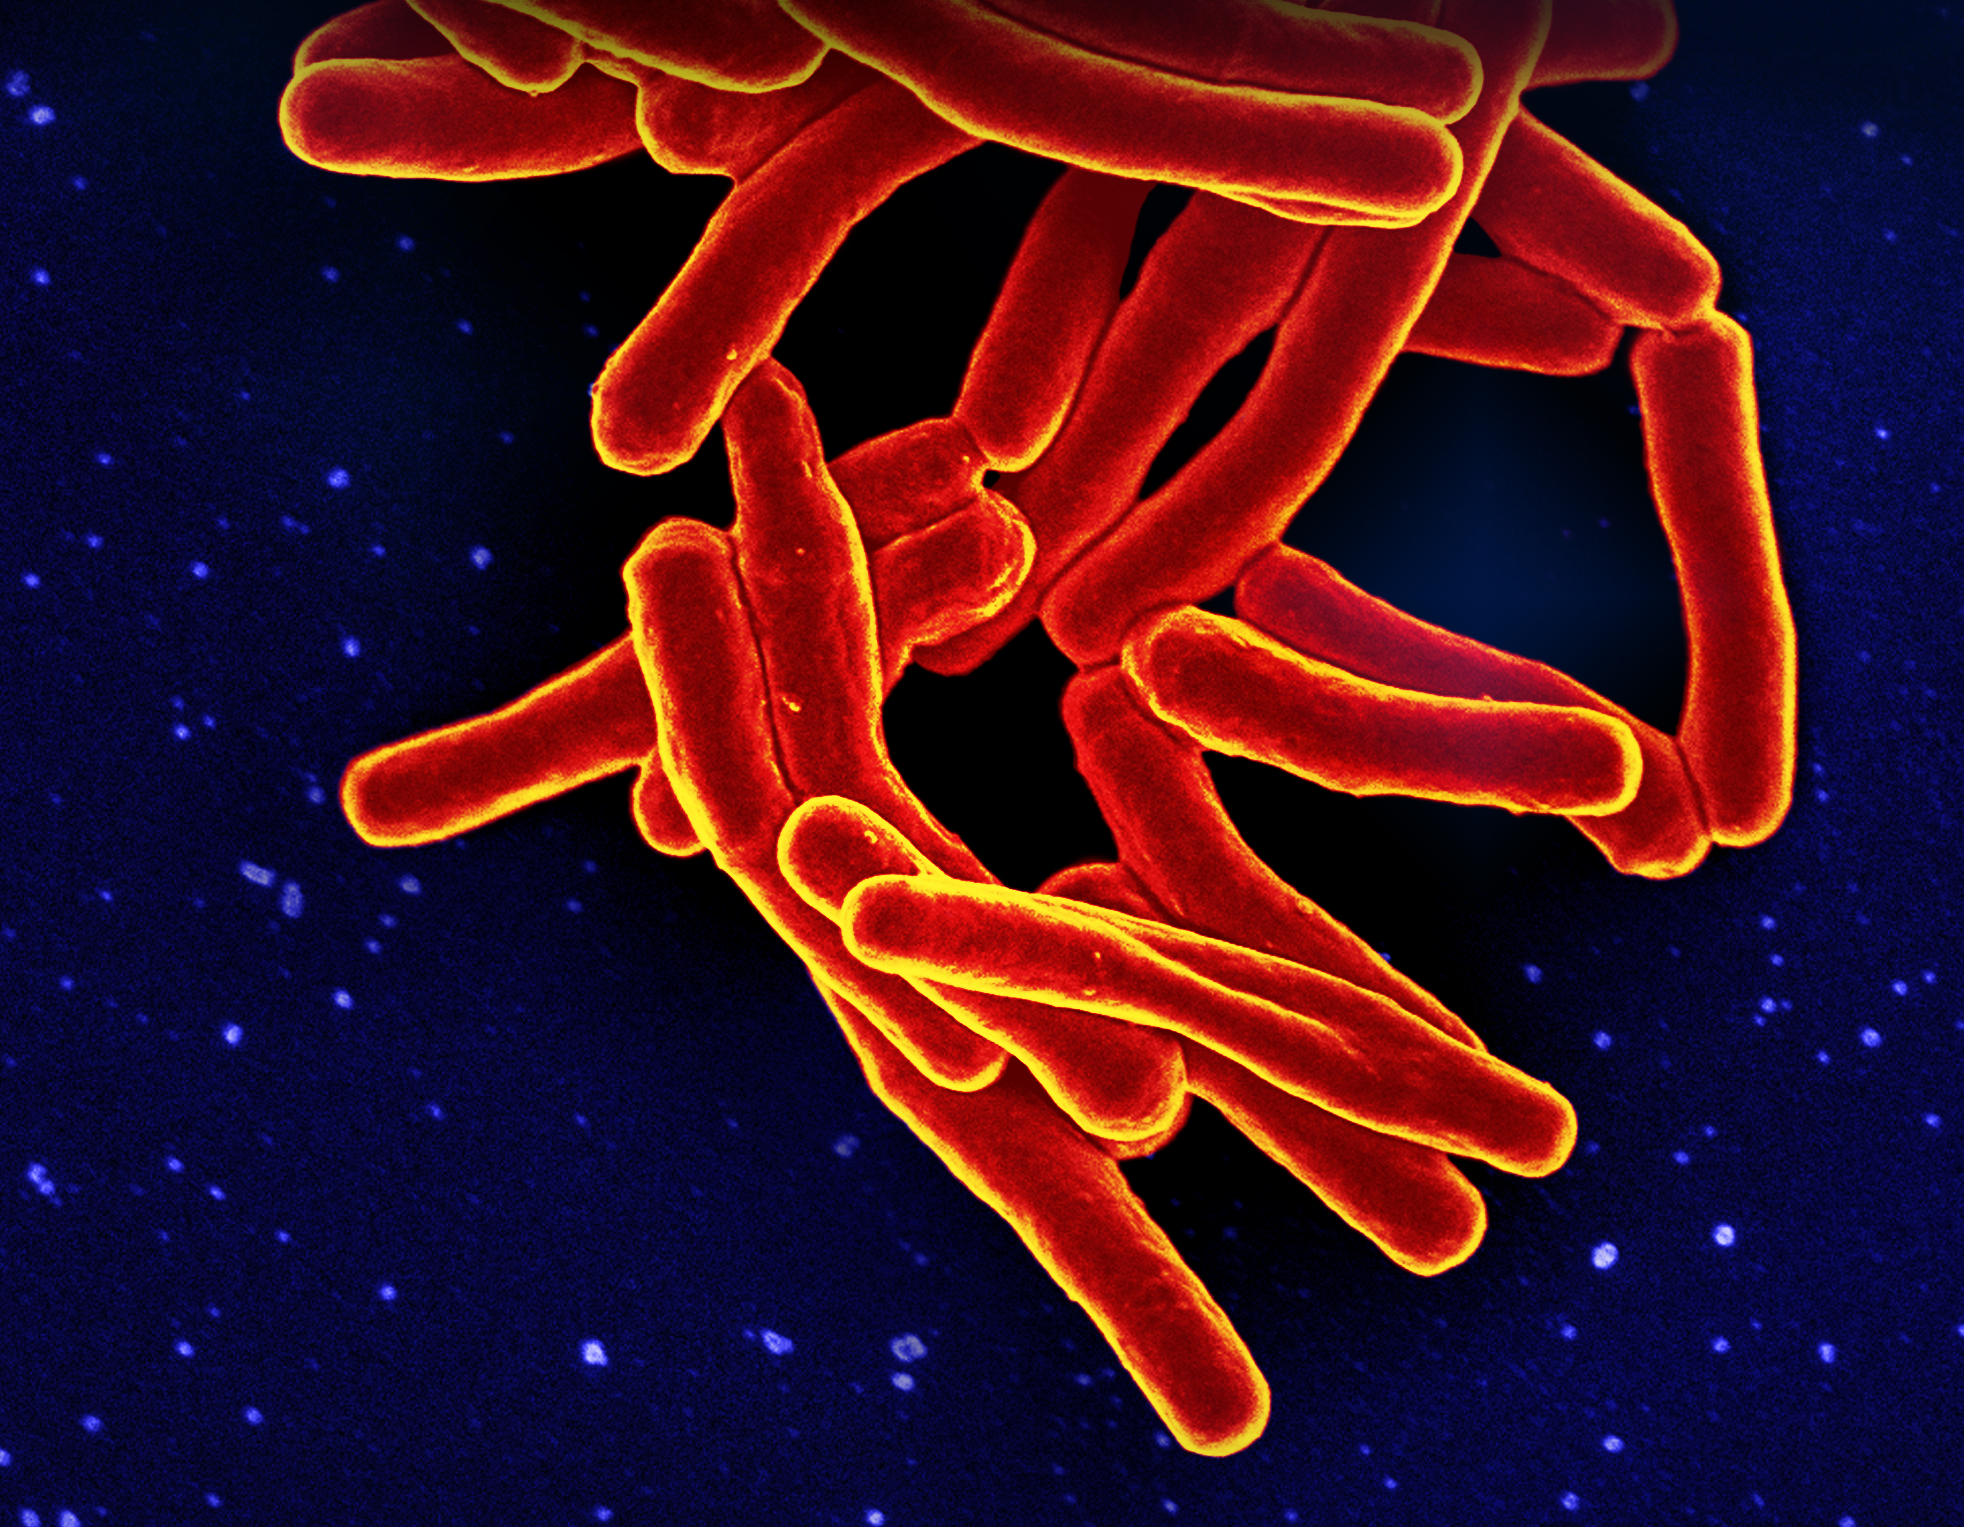 :SAIRAUDET: Vihtiläisestä päiväkodista on löytynyt tuberkuloosia